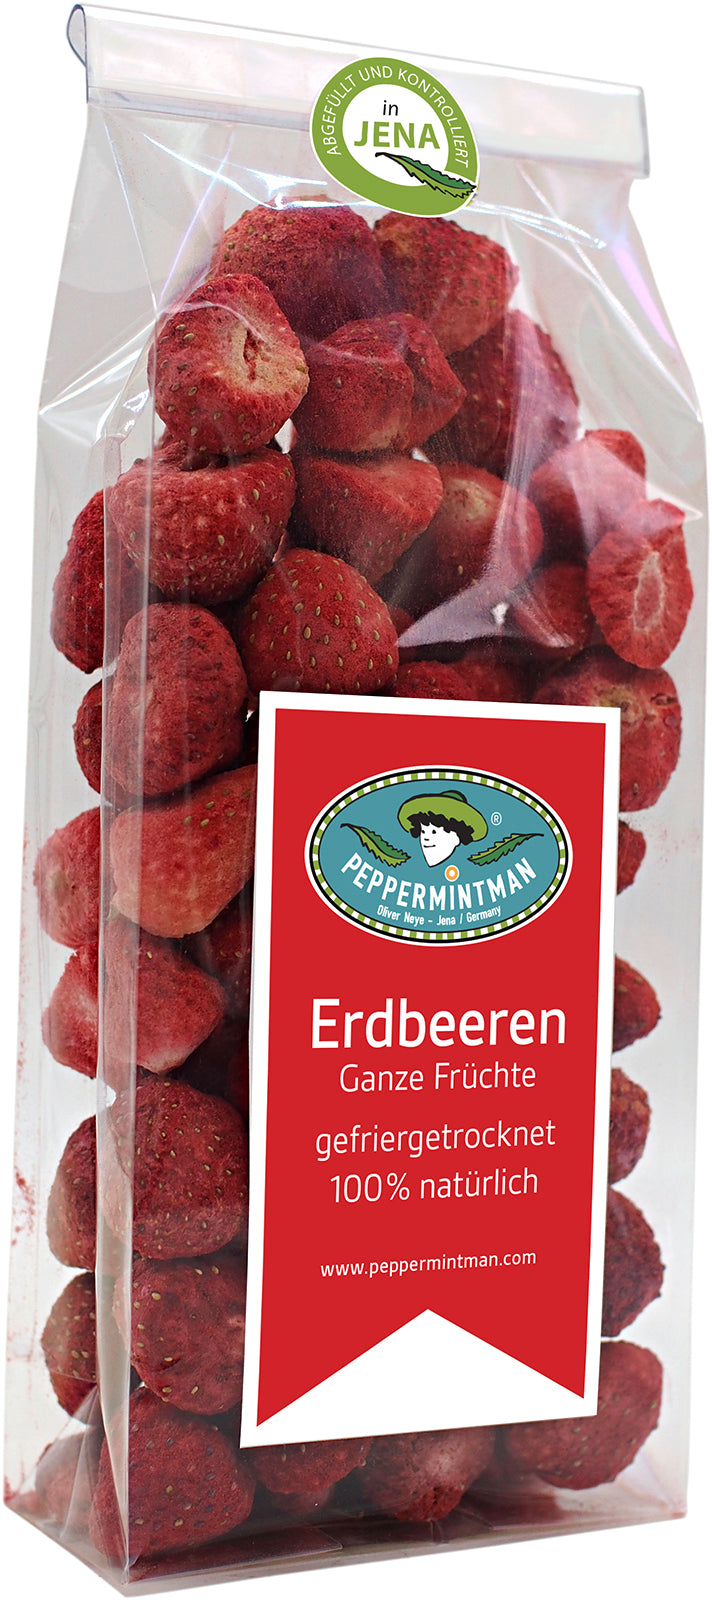 Erdbeeren - ganze Früchte - 100 % natürlich, gefriergetrocknet